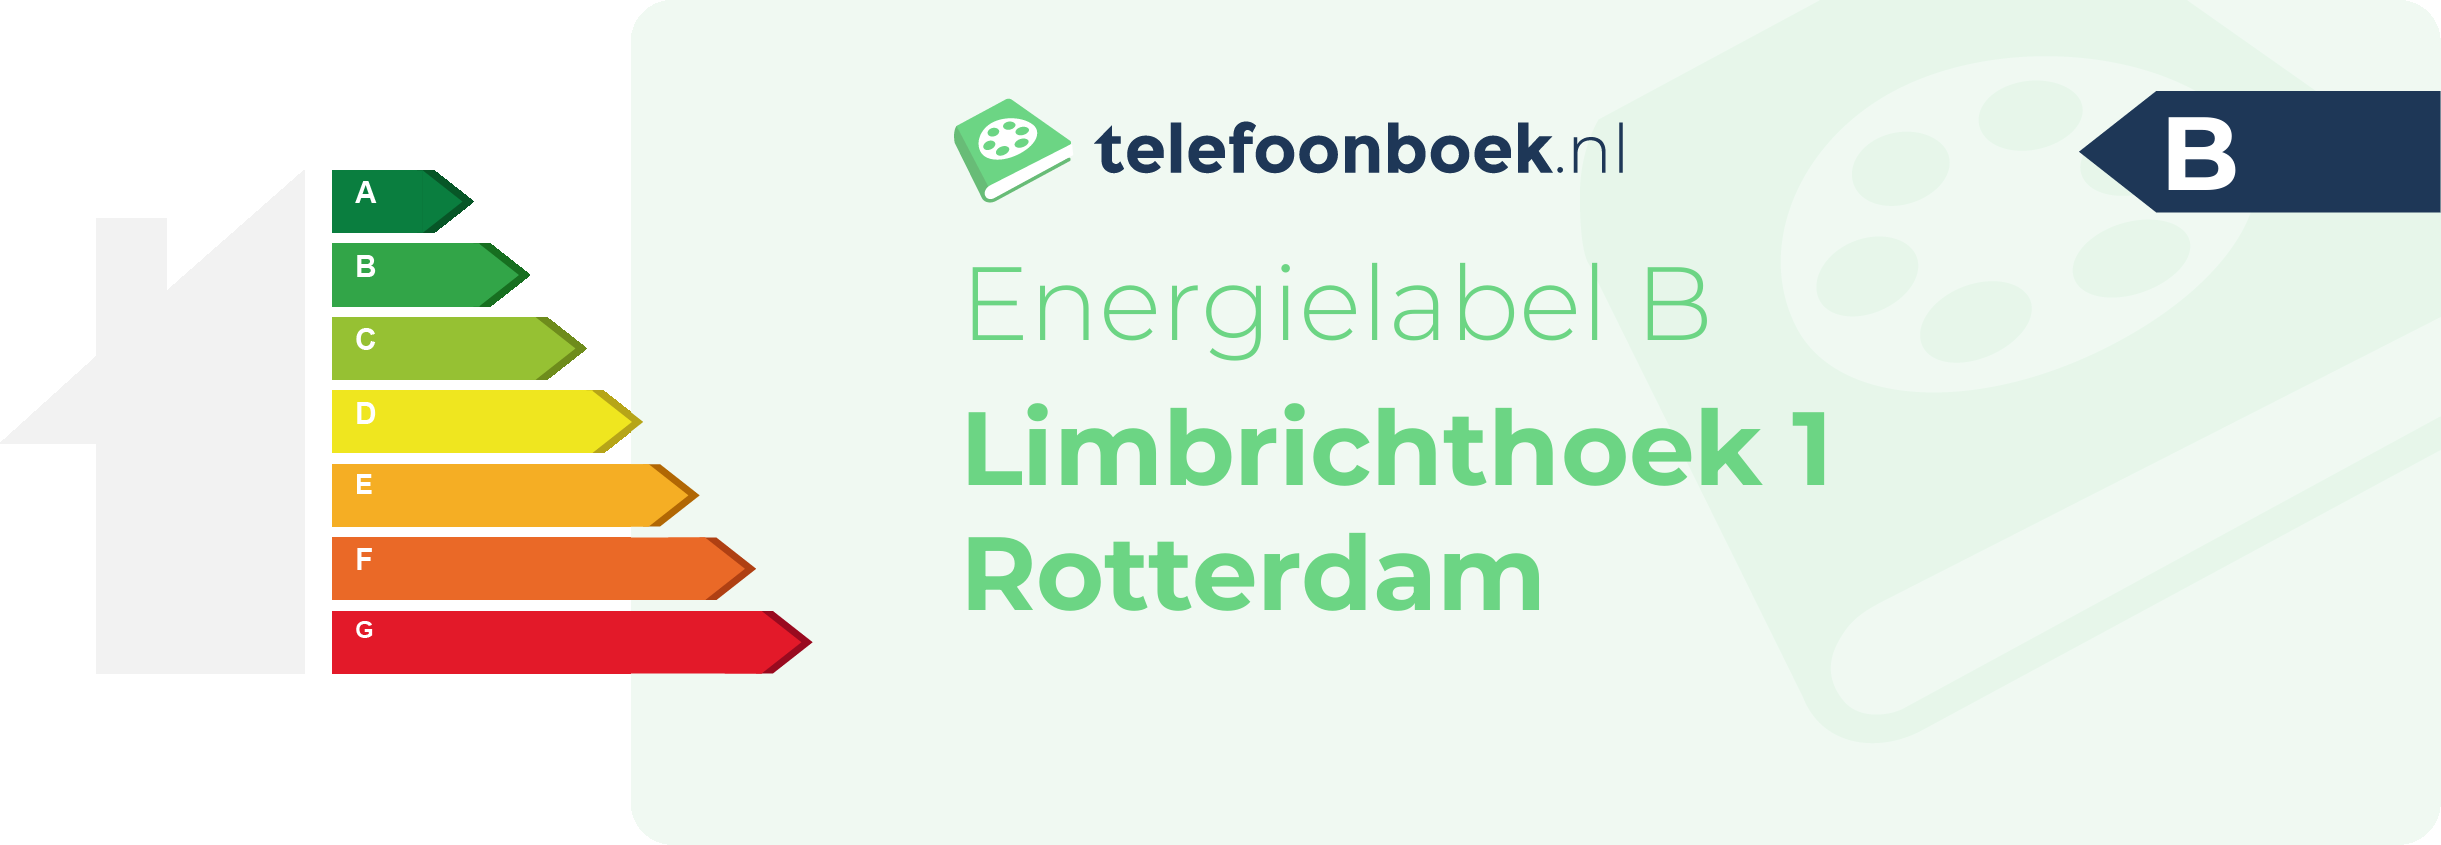 Energielabel Limbrichthoek 1 Rotterdam